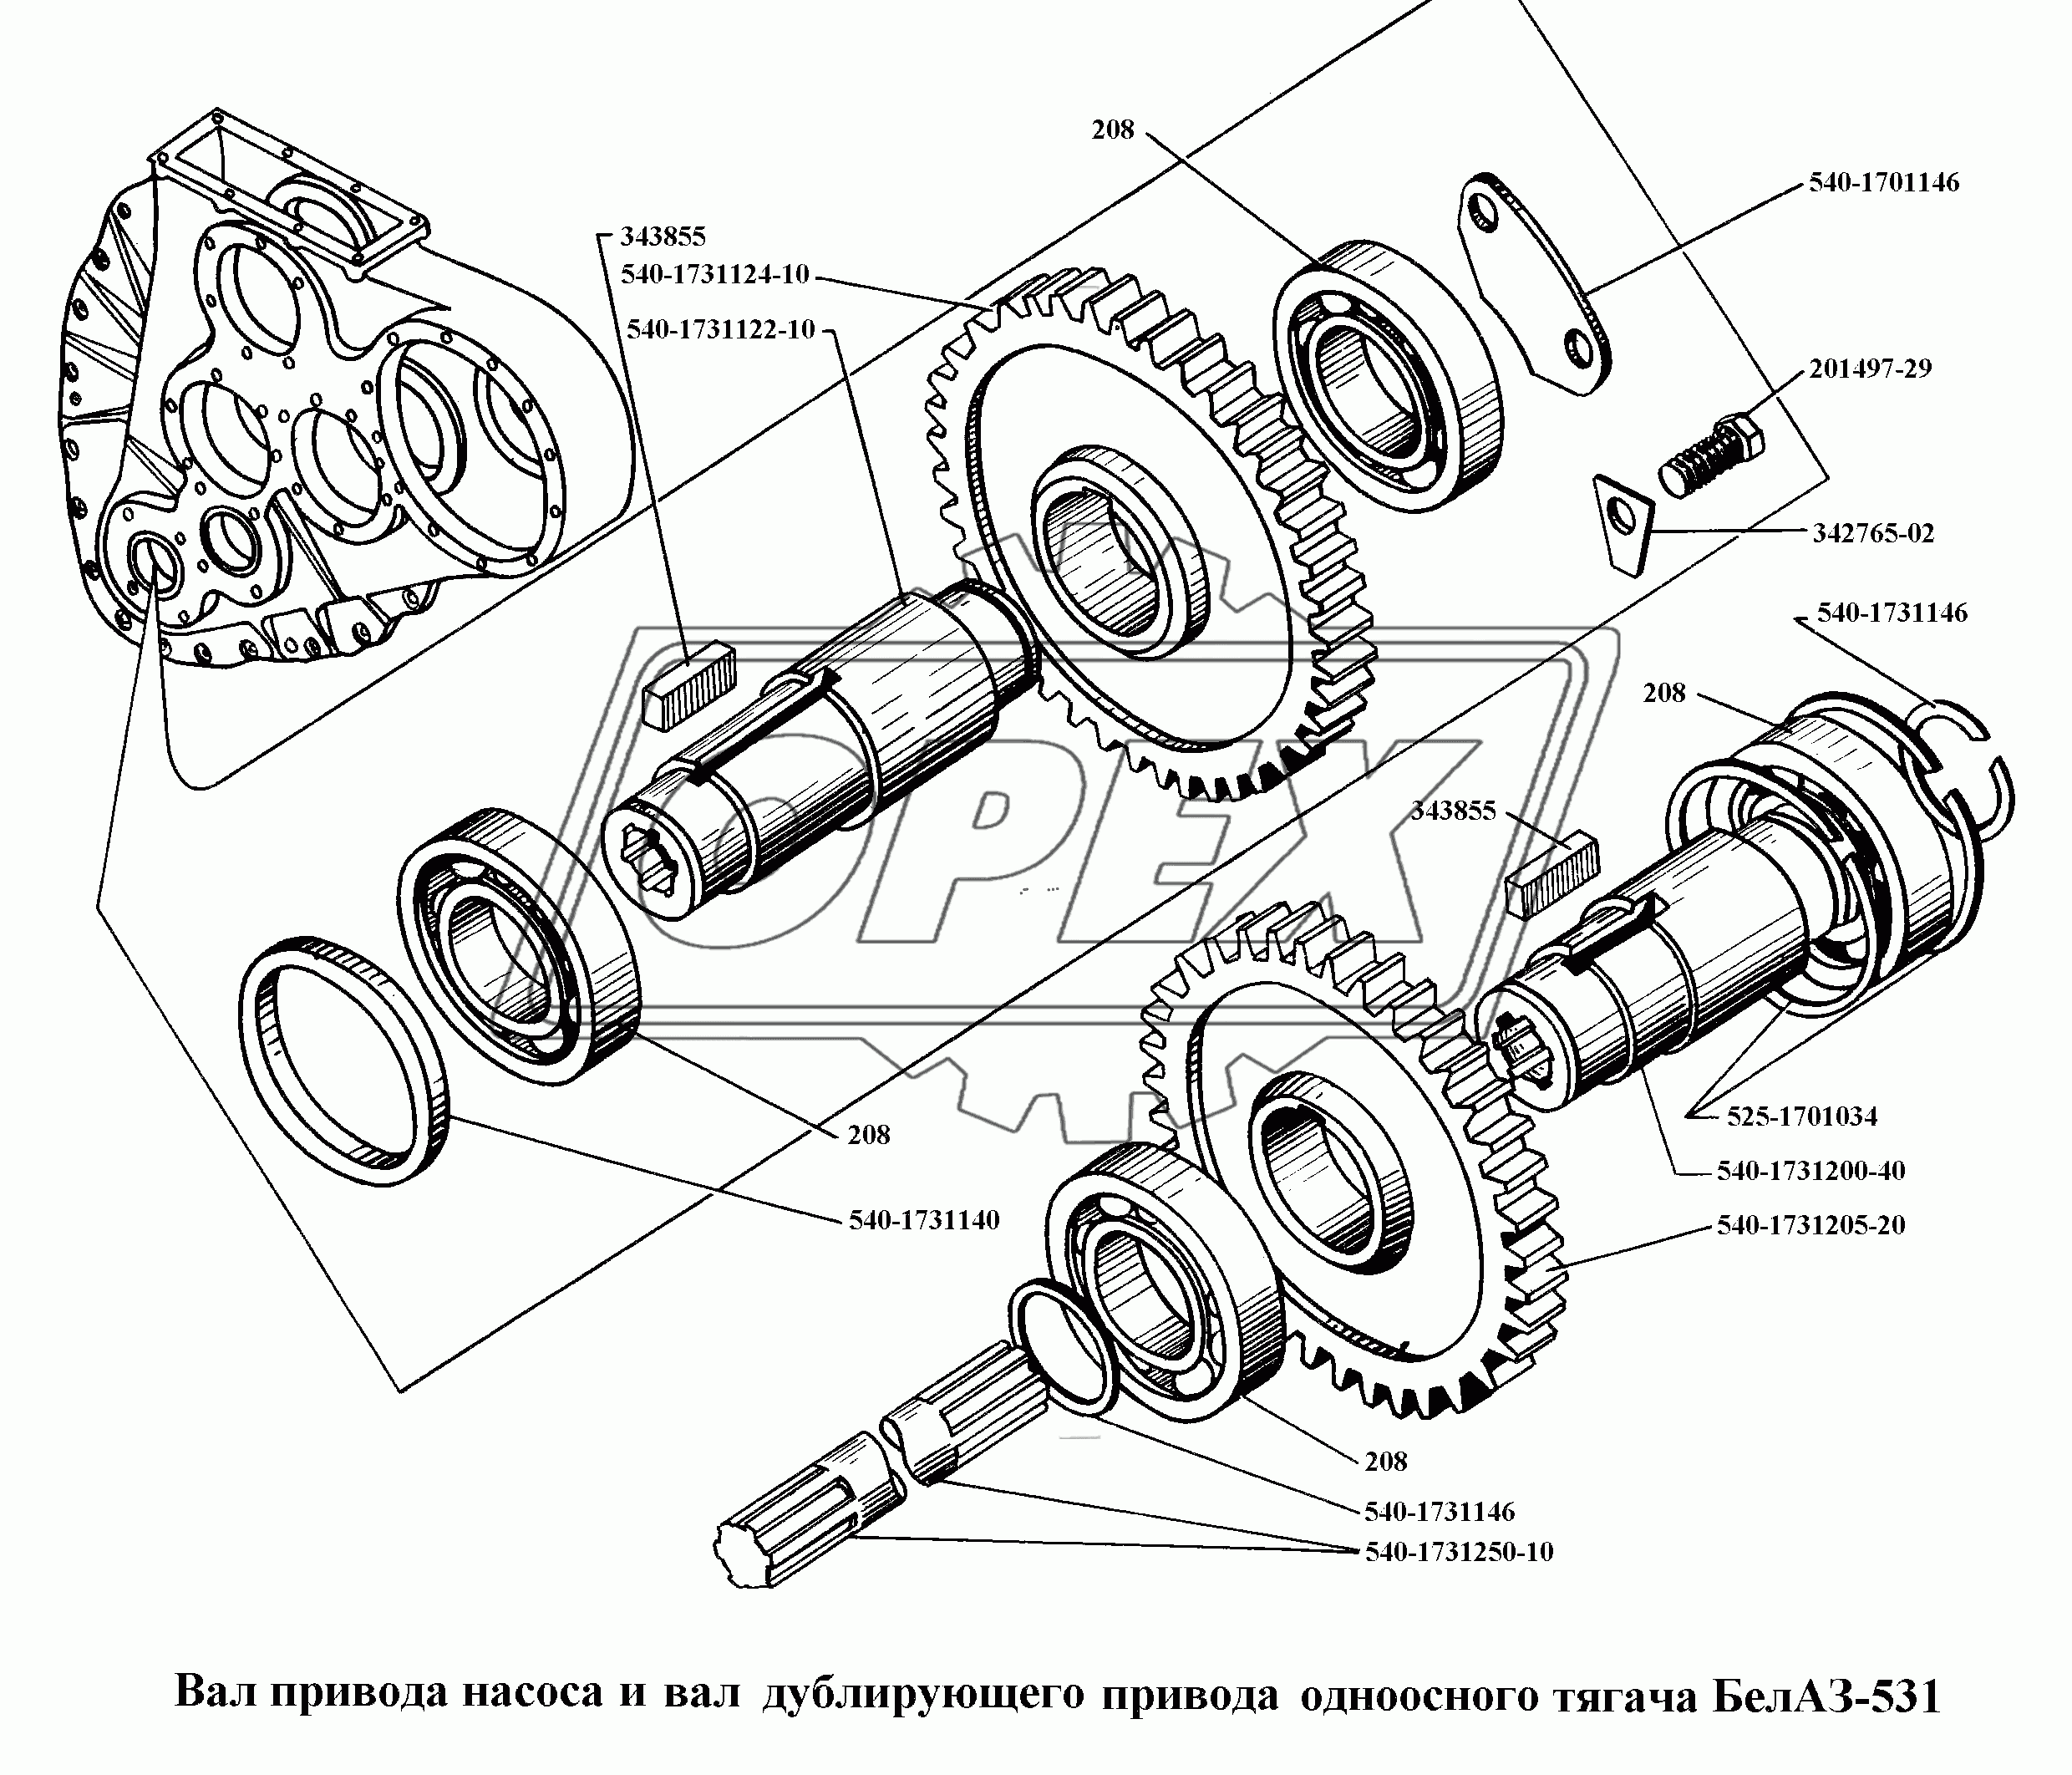 Вал привода насоса и вал дублирующего привода одноосного тягача БелАЗ-531